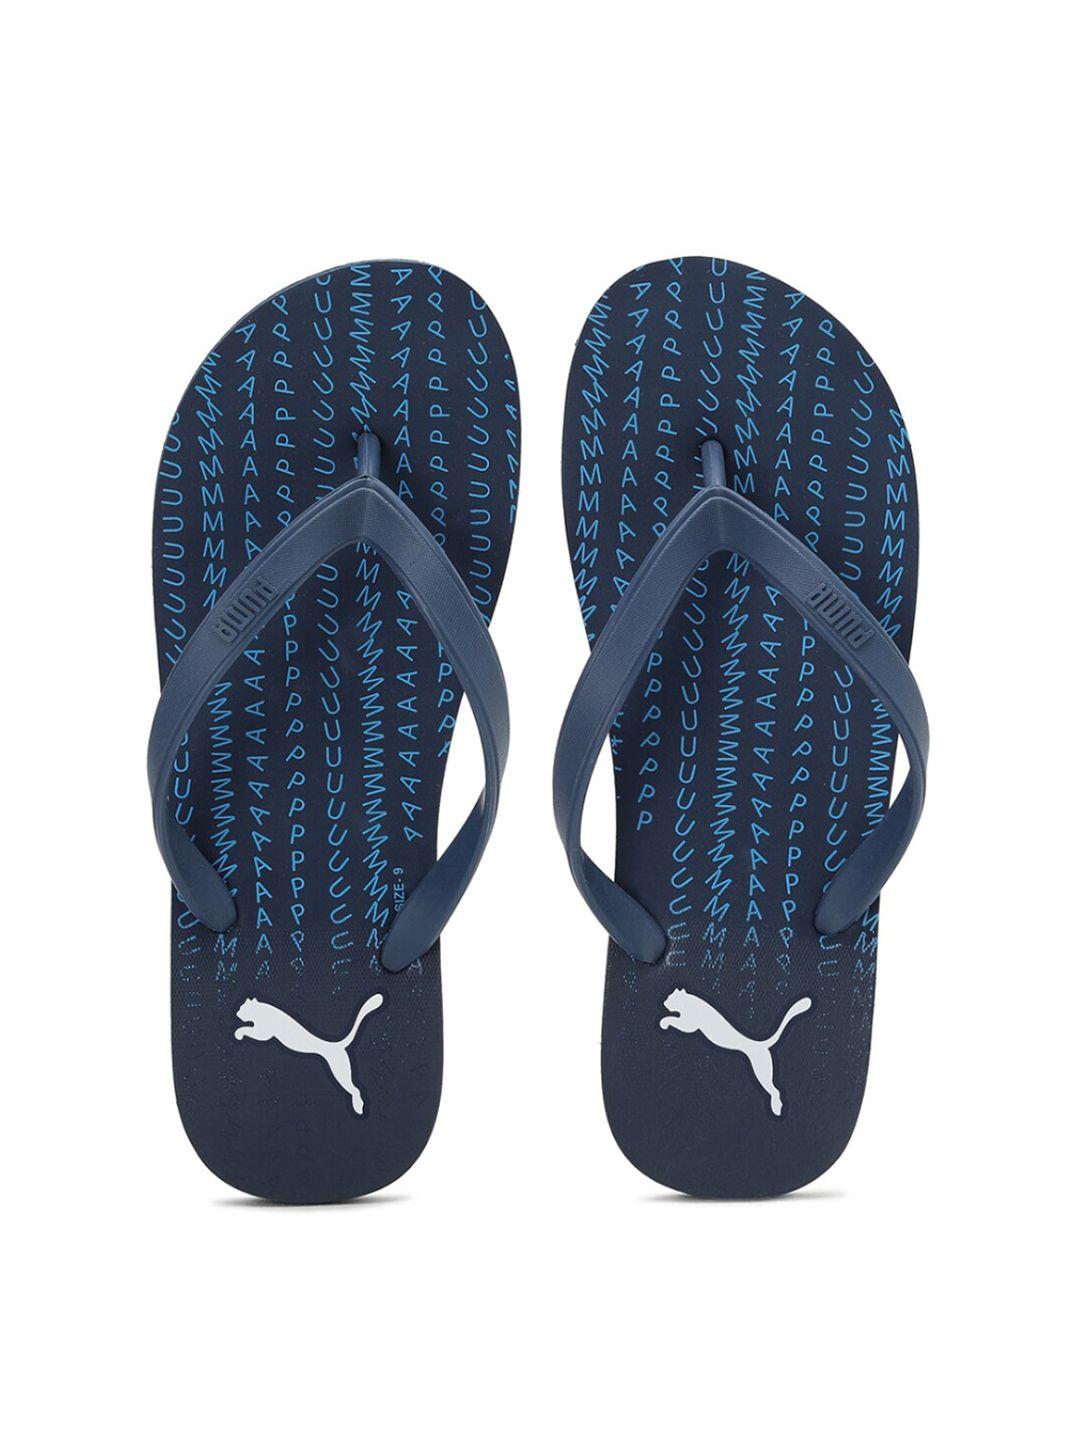 puma unisex blue sandals